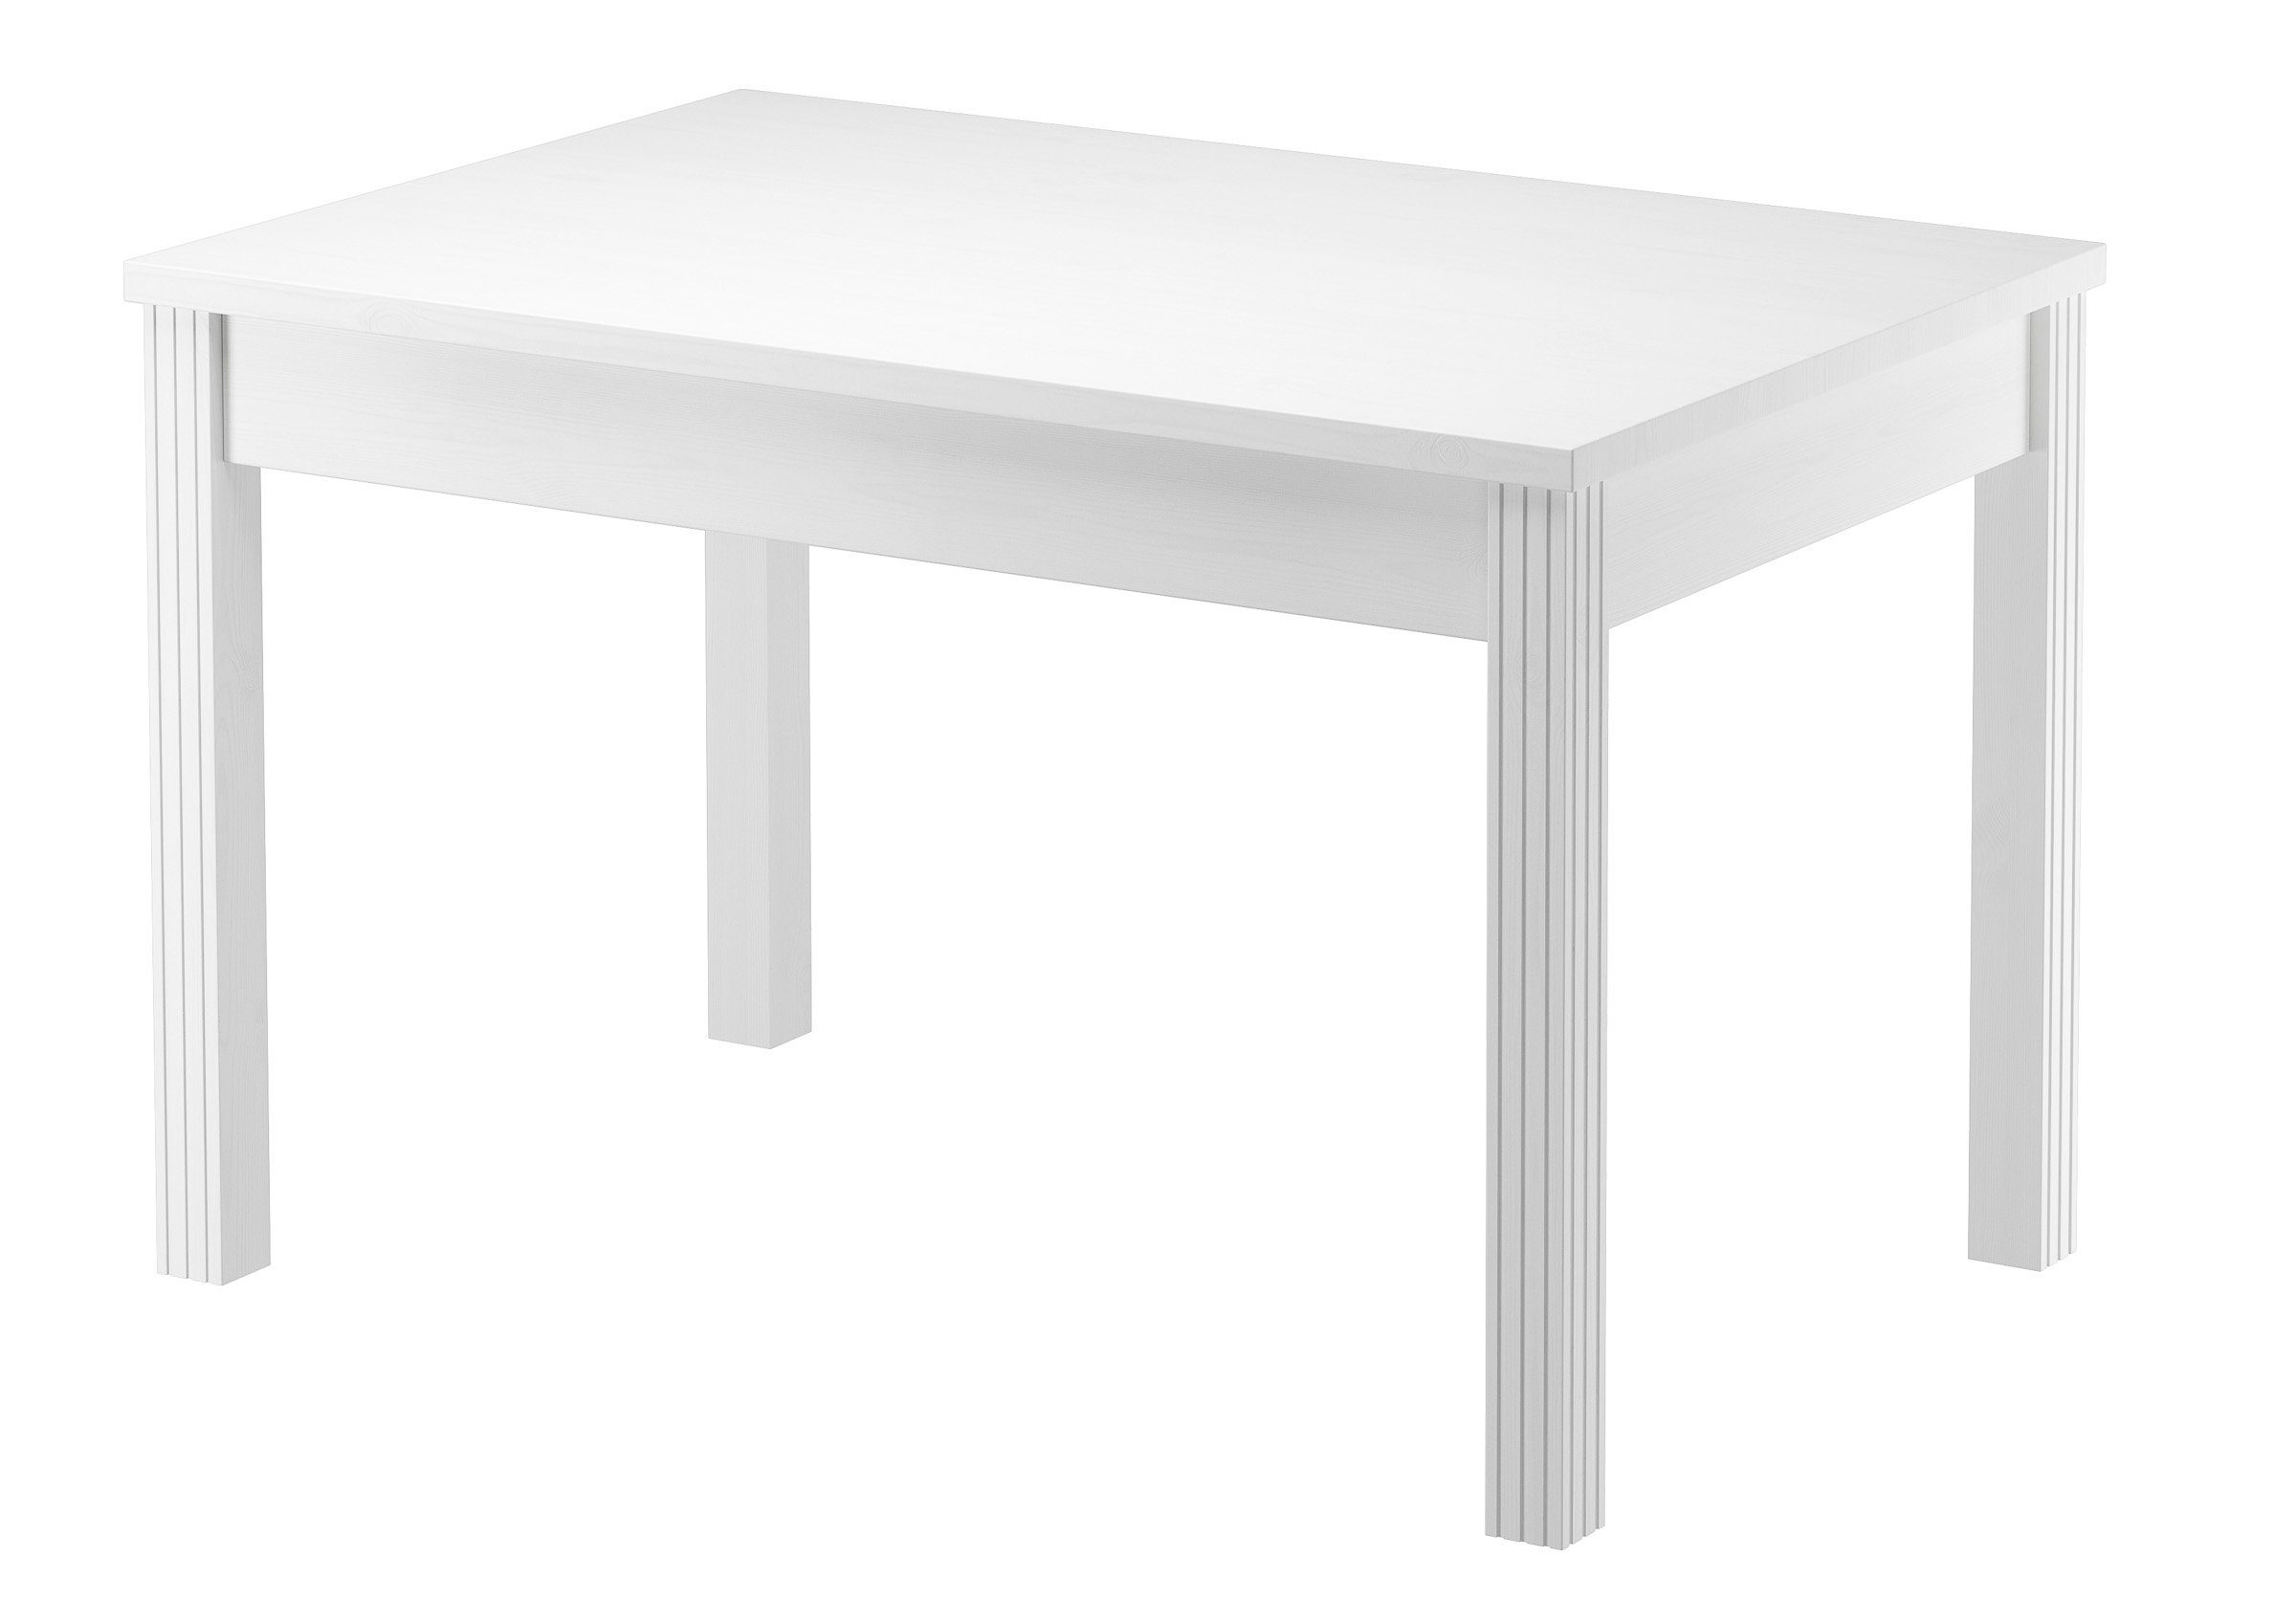 ERST-HOLZ Küchentisch Tisch 80x120 Esstisch Massivholz Beine Rille Senkrecht